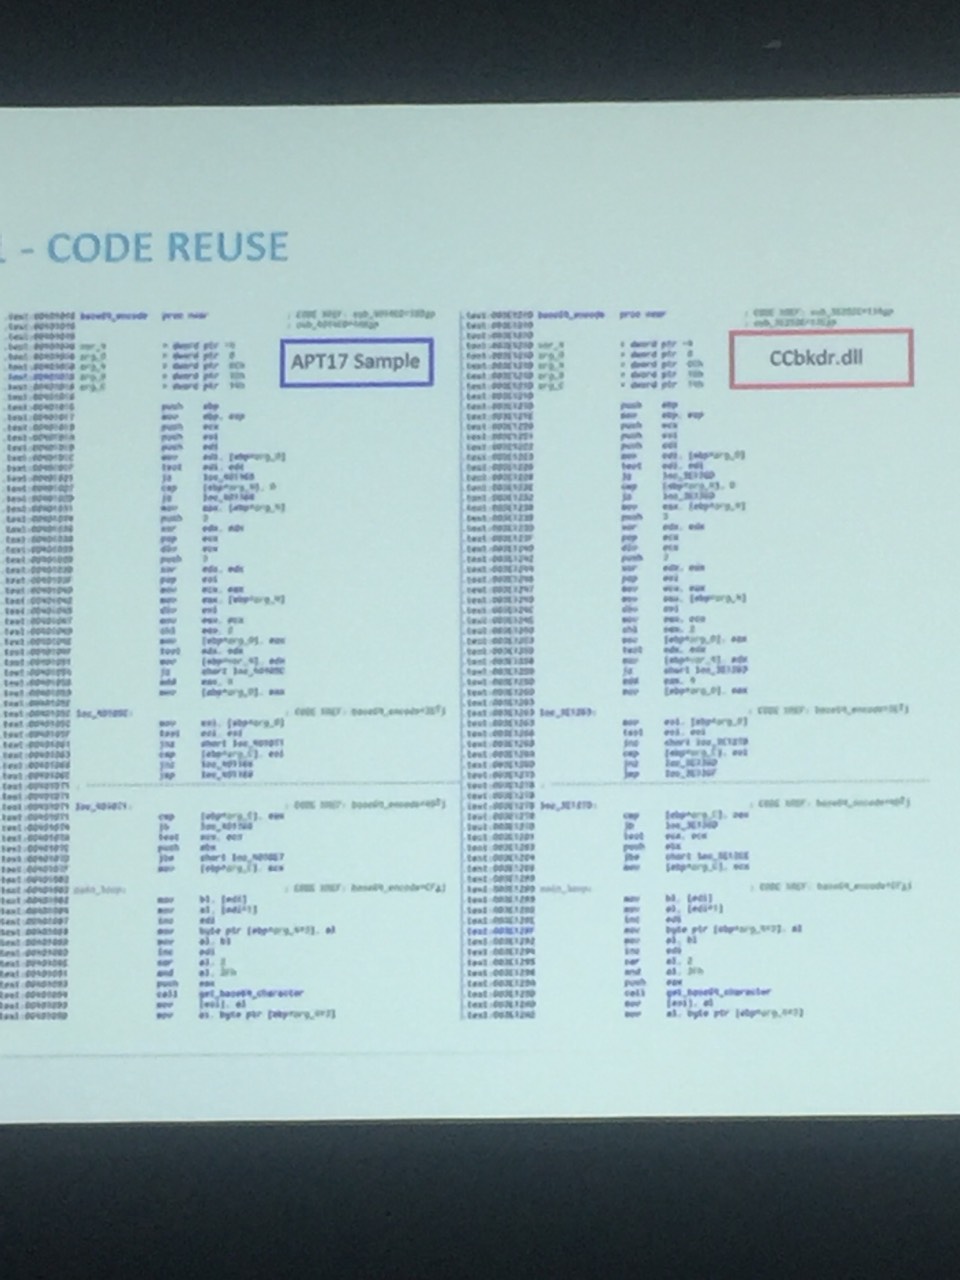 ATP17画面はコード再利用の比較の一部。